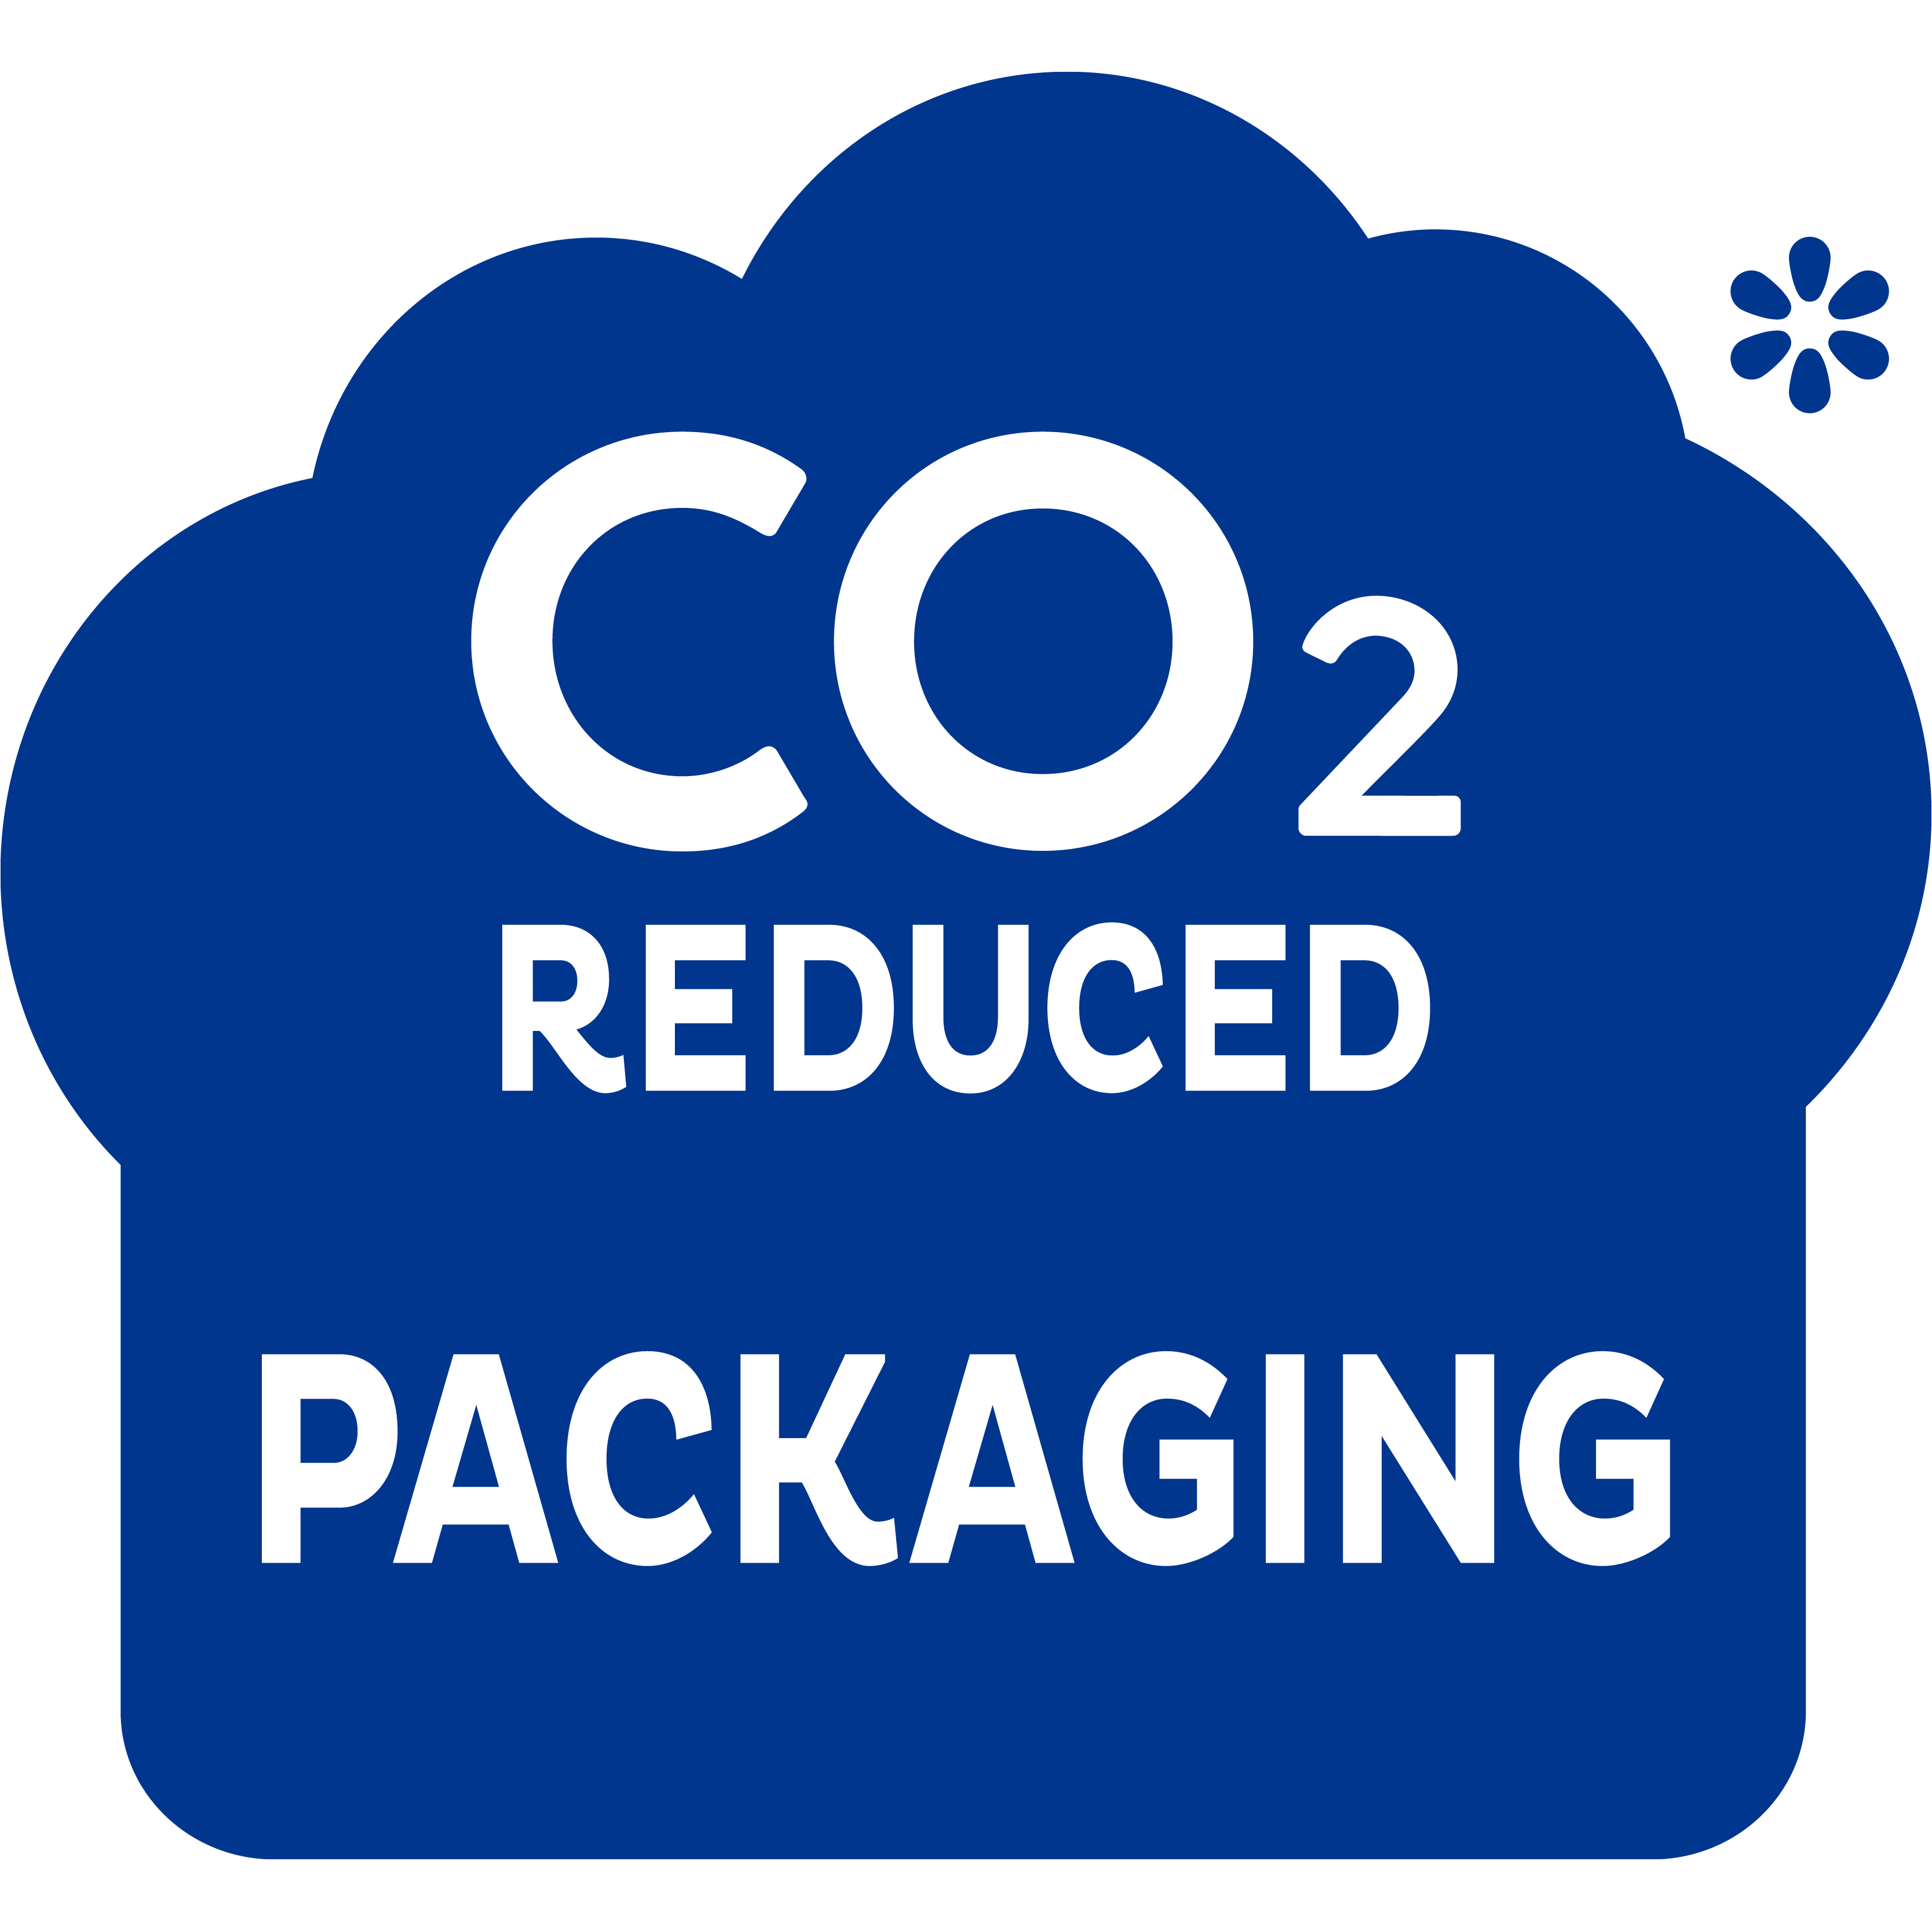 Met minder CO2 geproduceerde verpakking - voor een stap in de goede richting